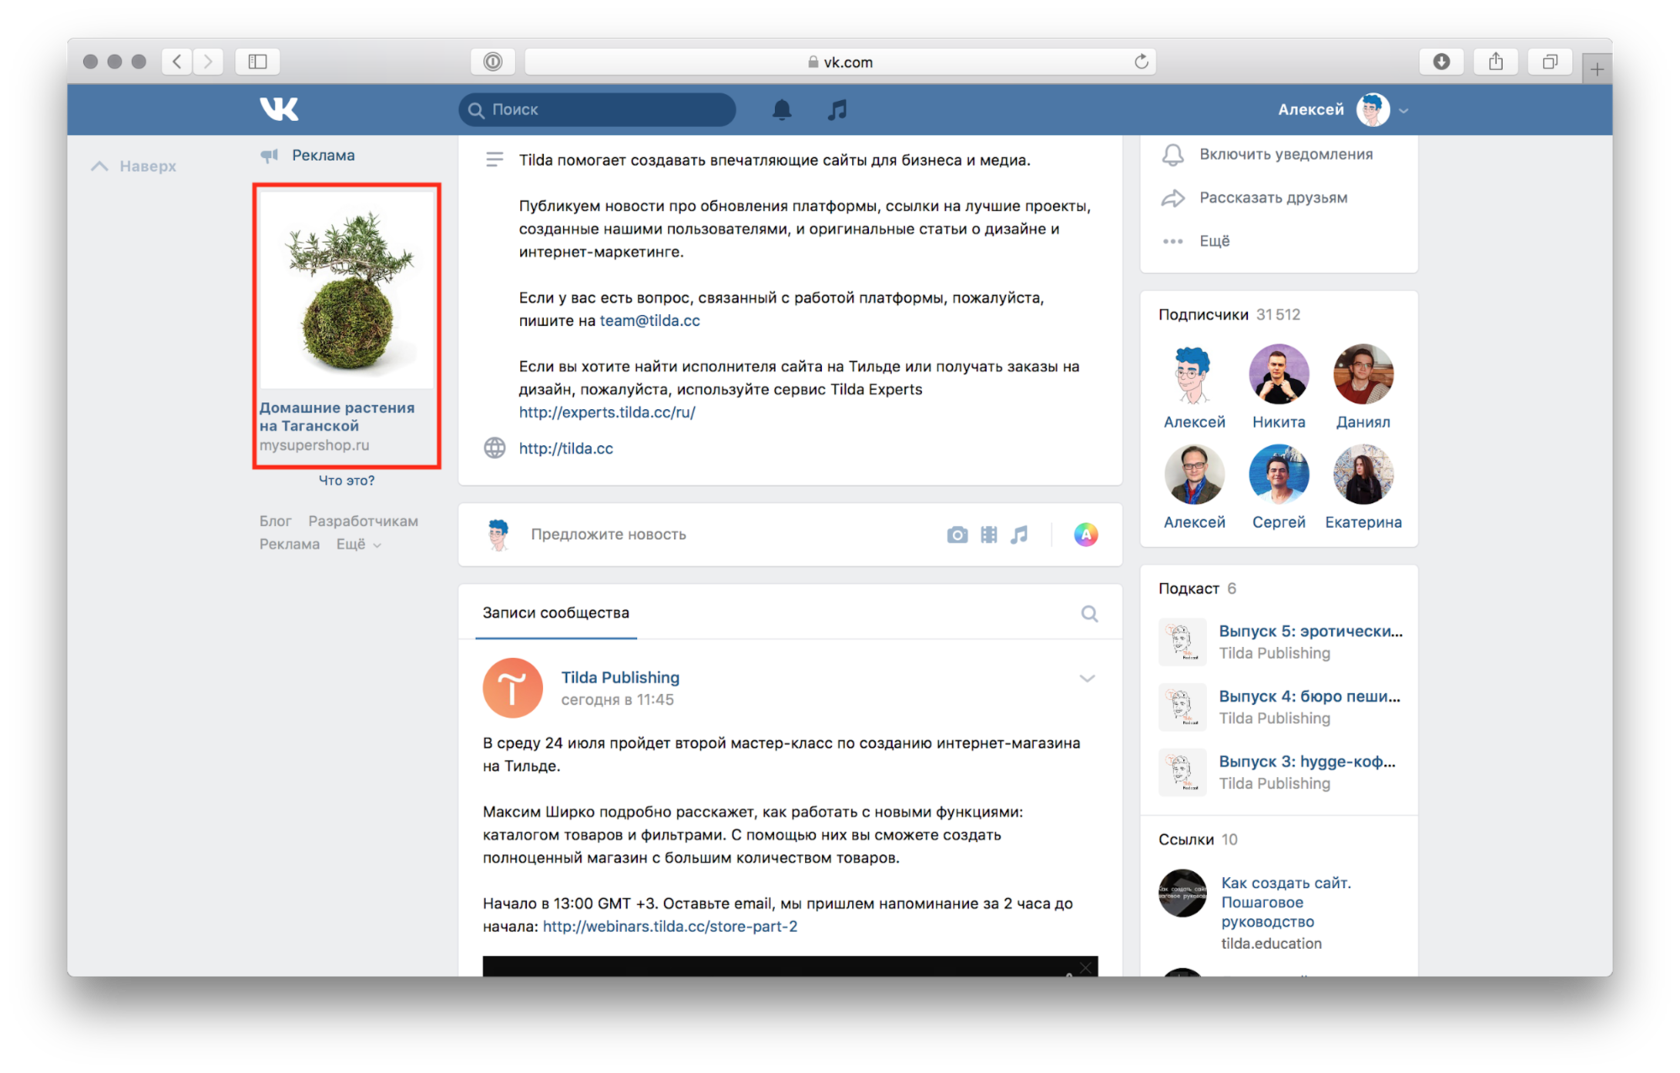 Управление Страницей бизнеса: Как найти первых подписчиков? | Бизнес ВКонтакте